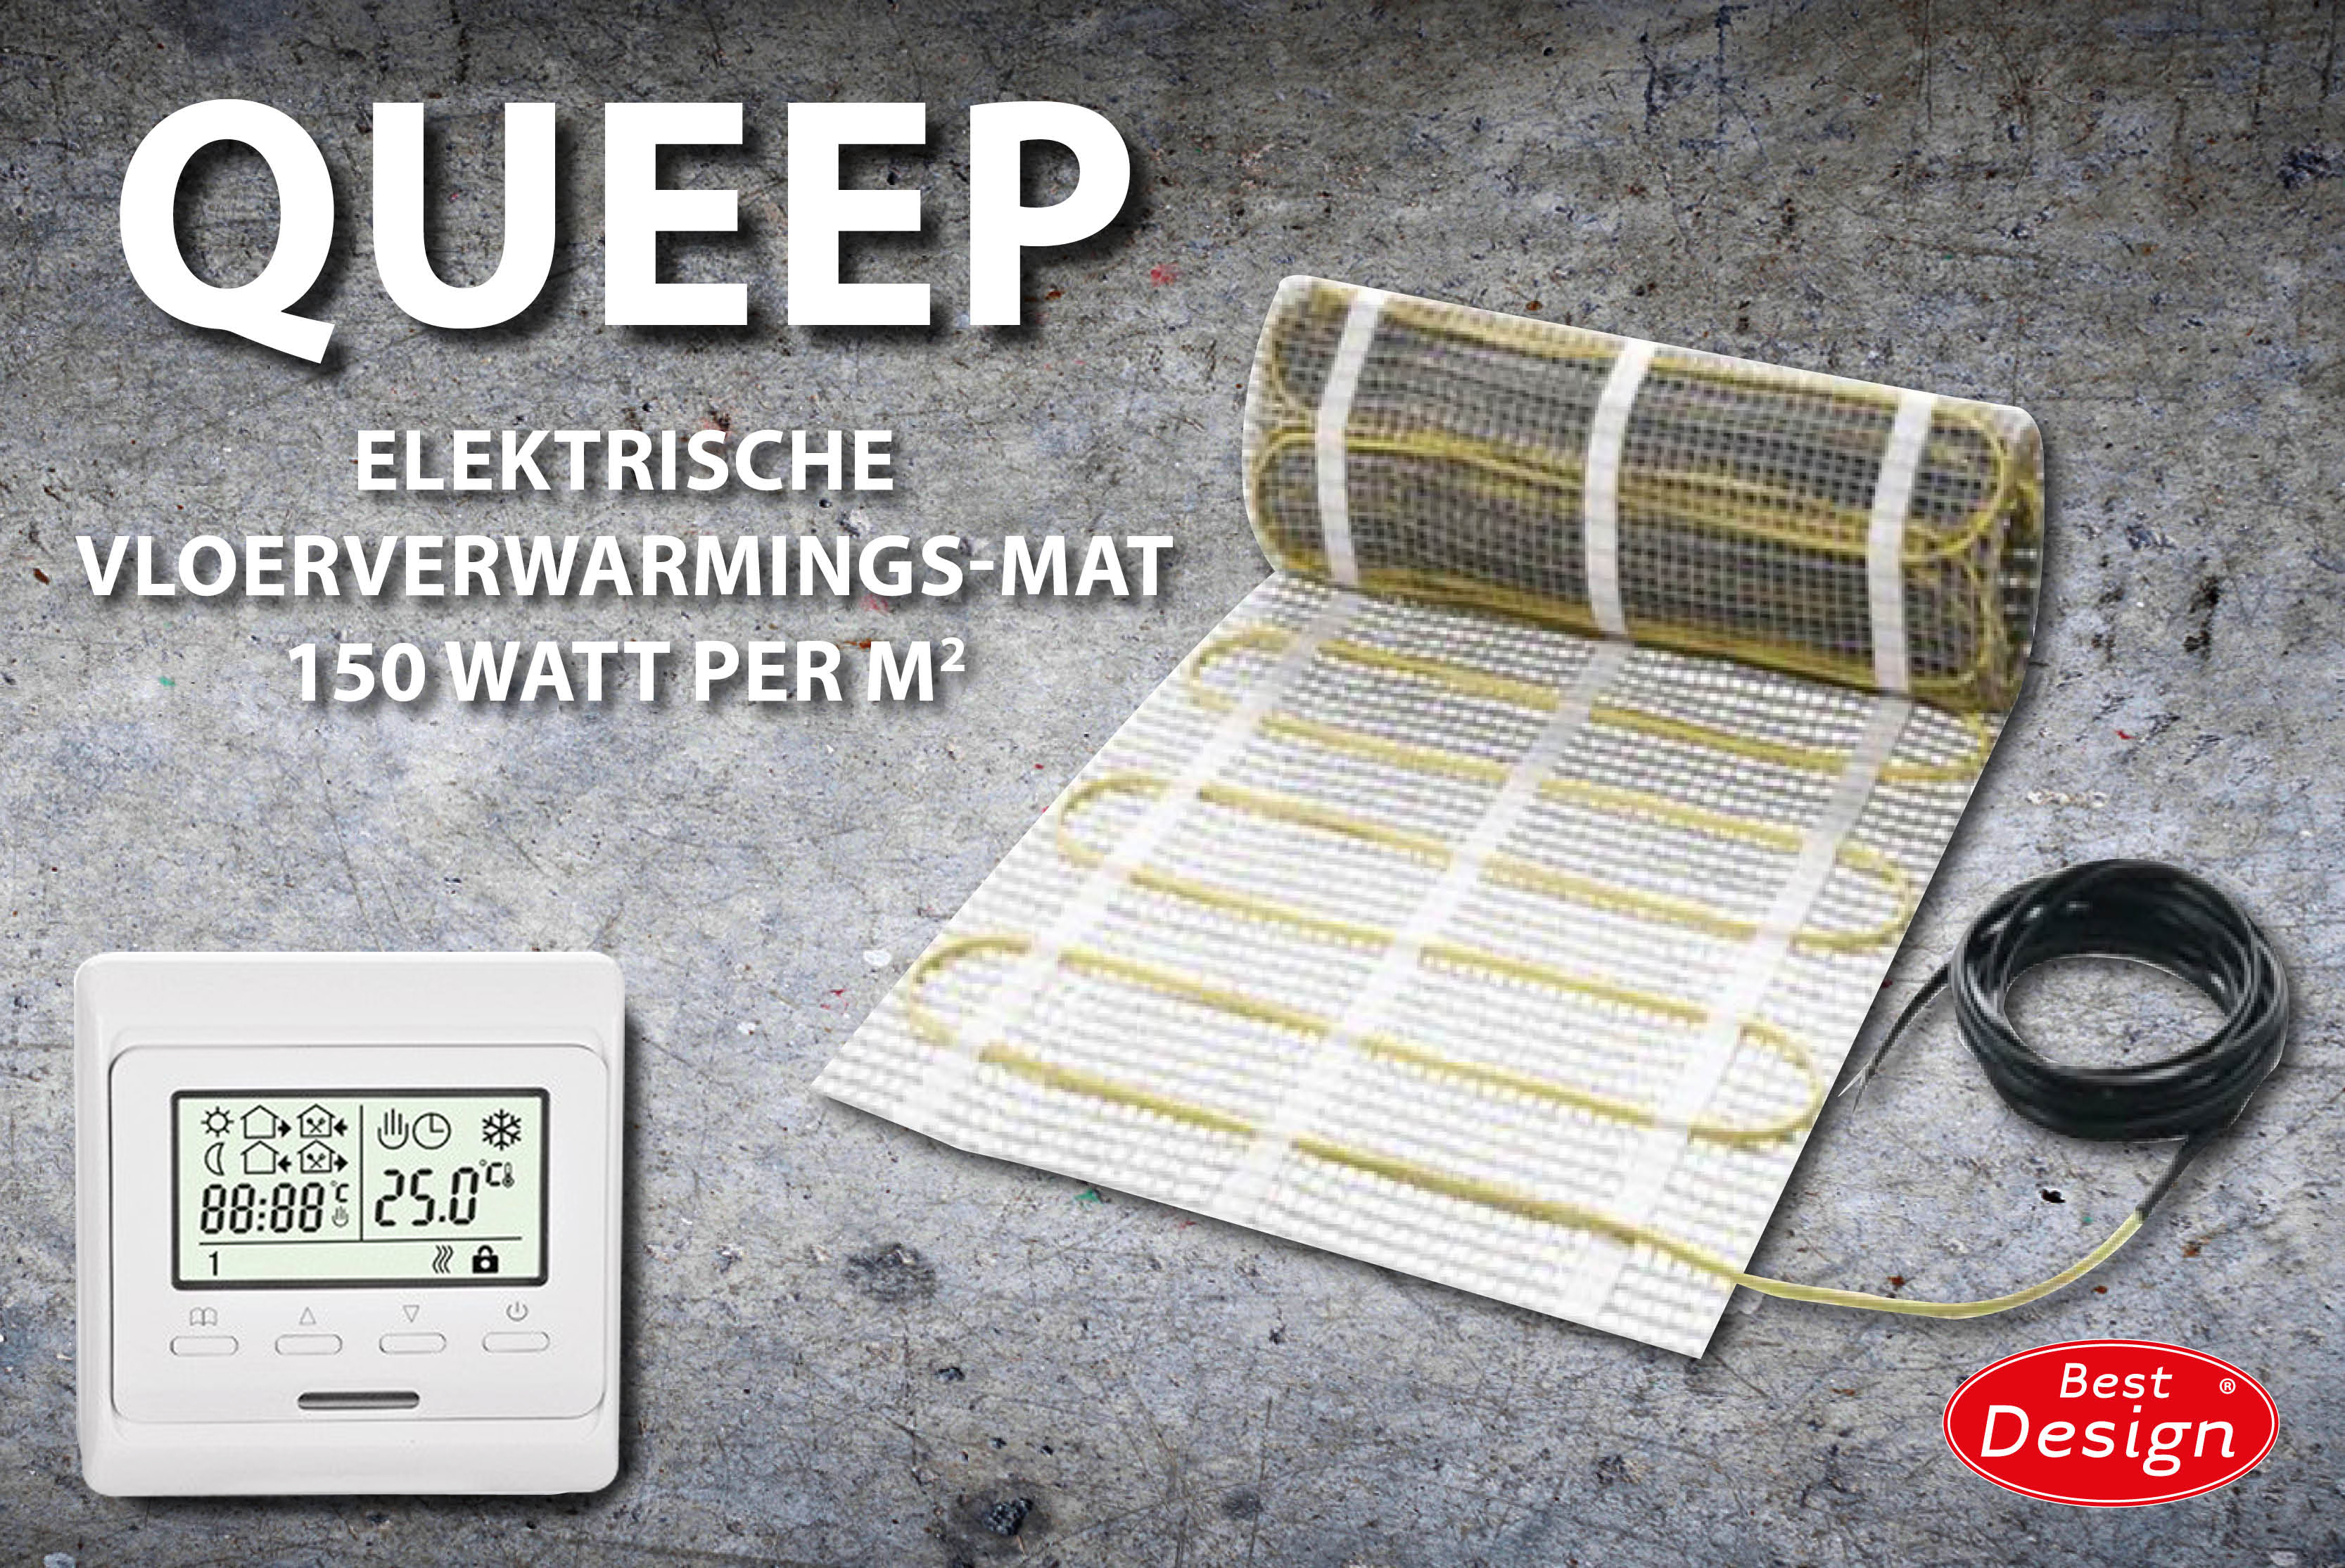 Best-Design Queep elektrische vloerverwarmings-mat 5.0 m2 Top Merken Winkel